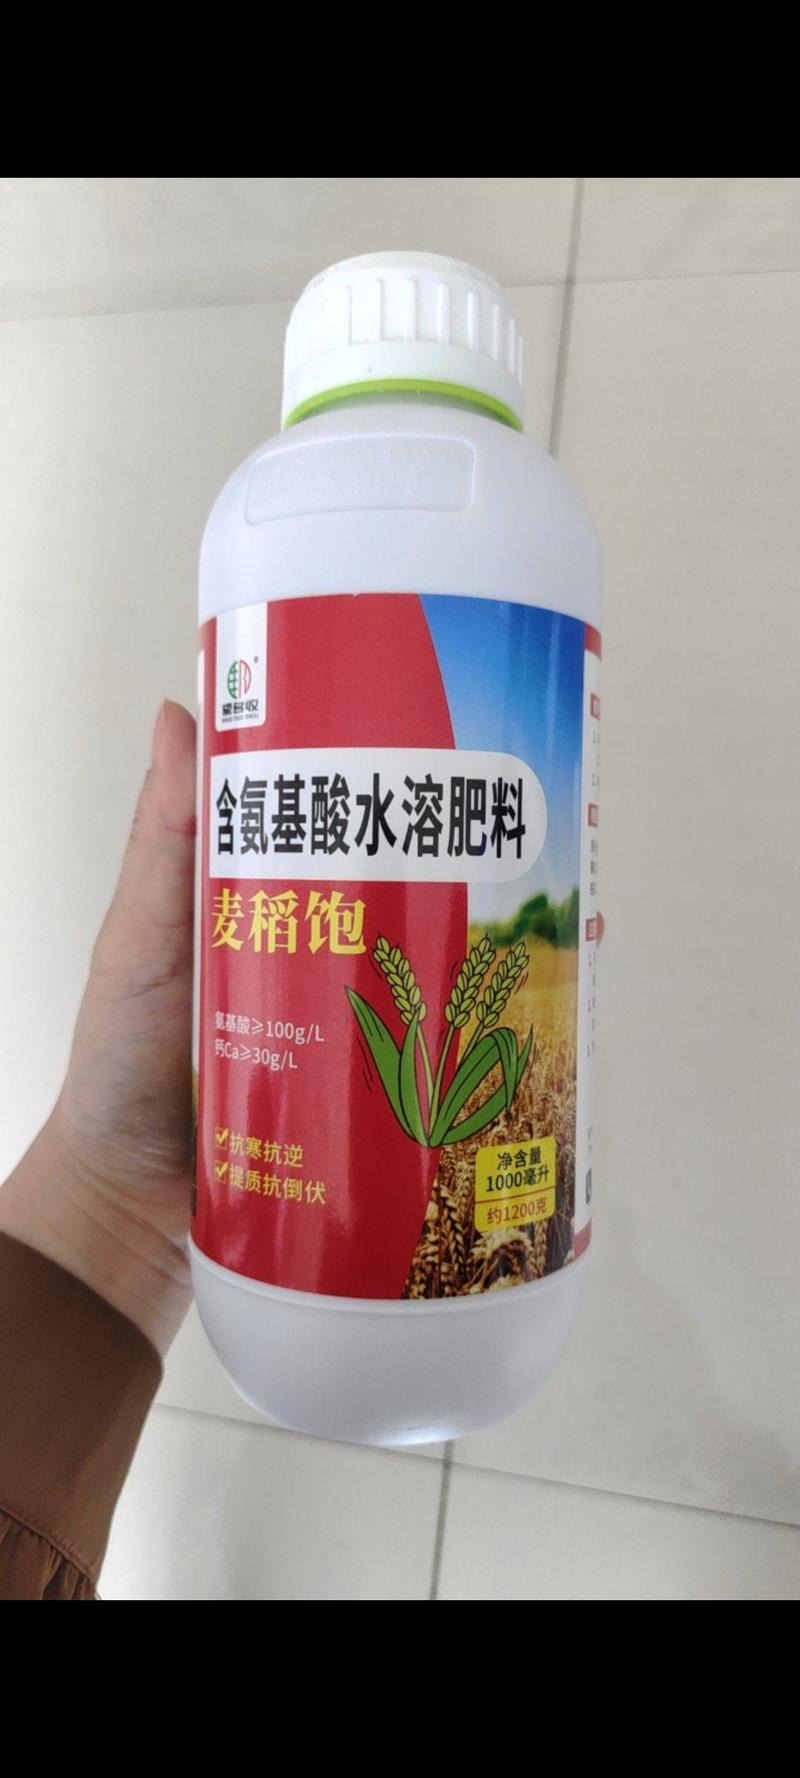 奥丰麦黄金叶面肥提质增产望多收麦稻饱叶面肥农用肥